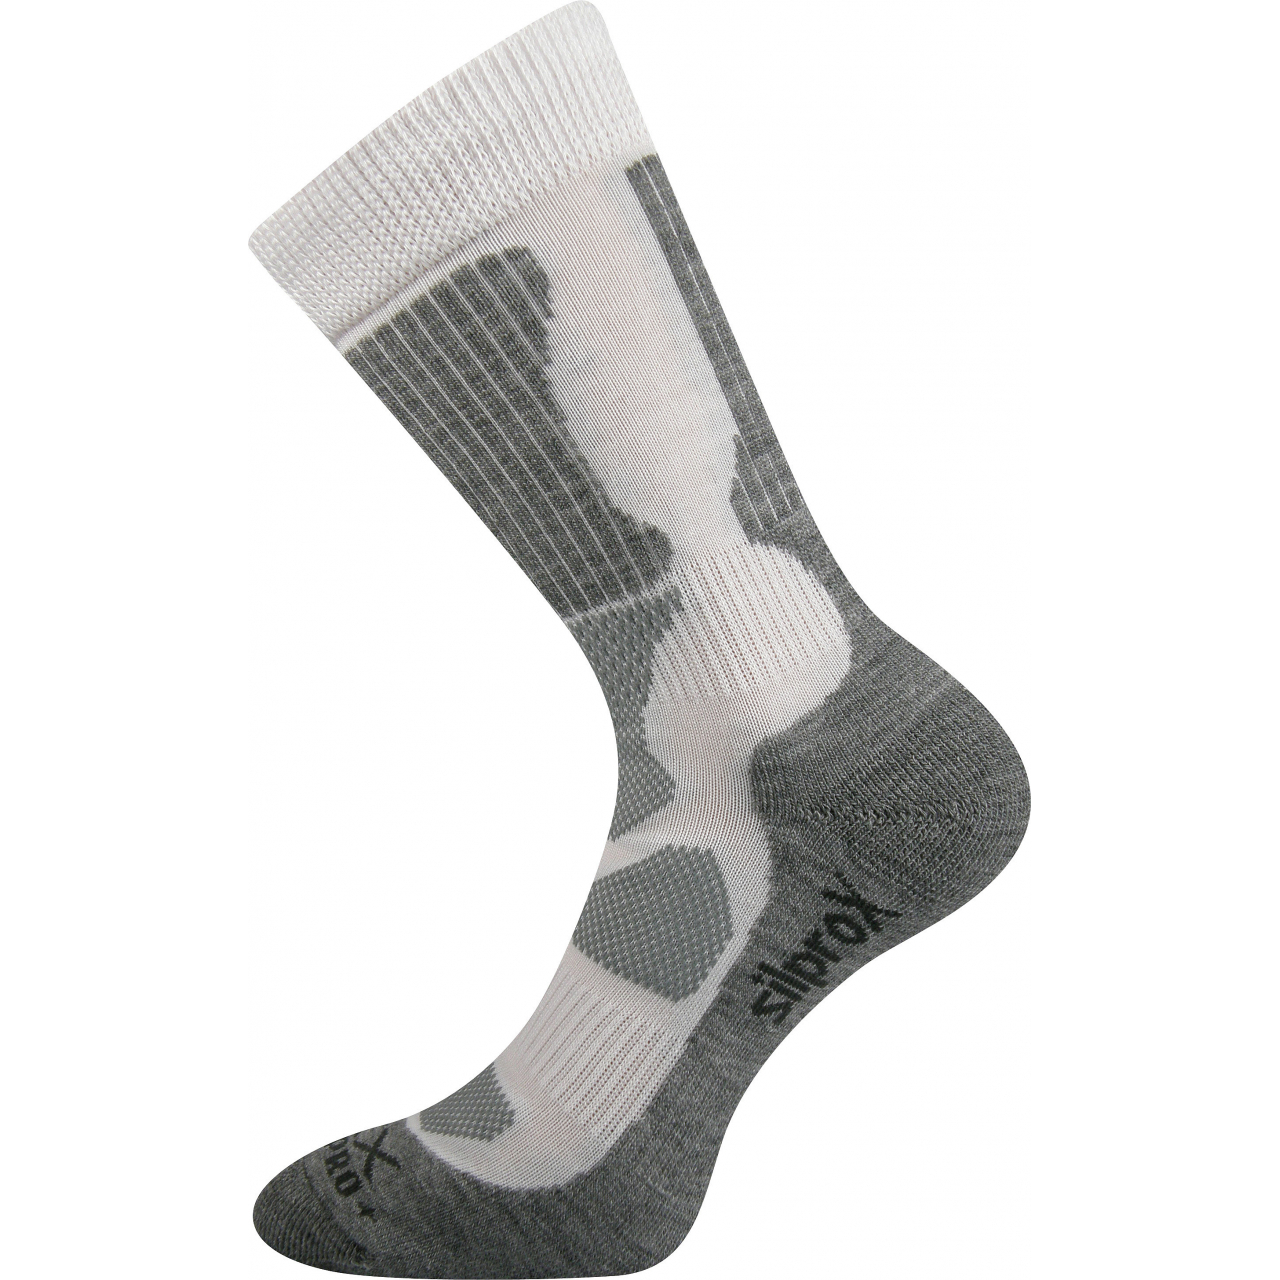 Ponožky sportovní Voxx Etrex - bílé-šedé, 43-46